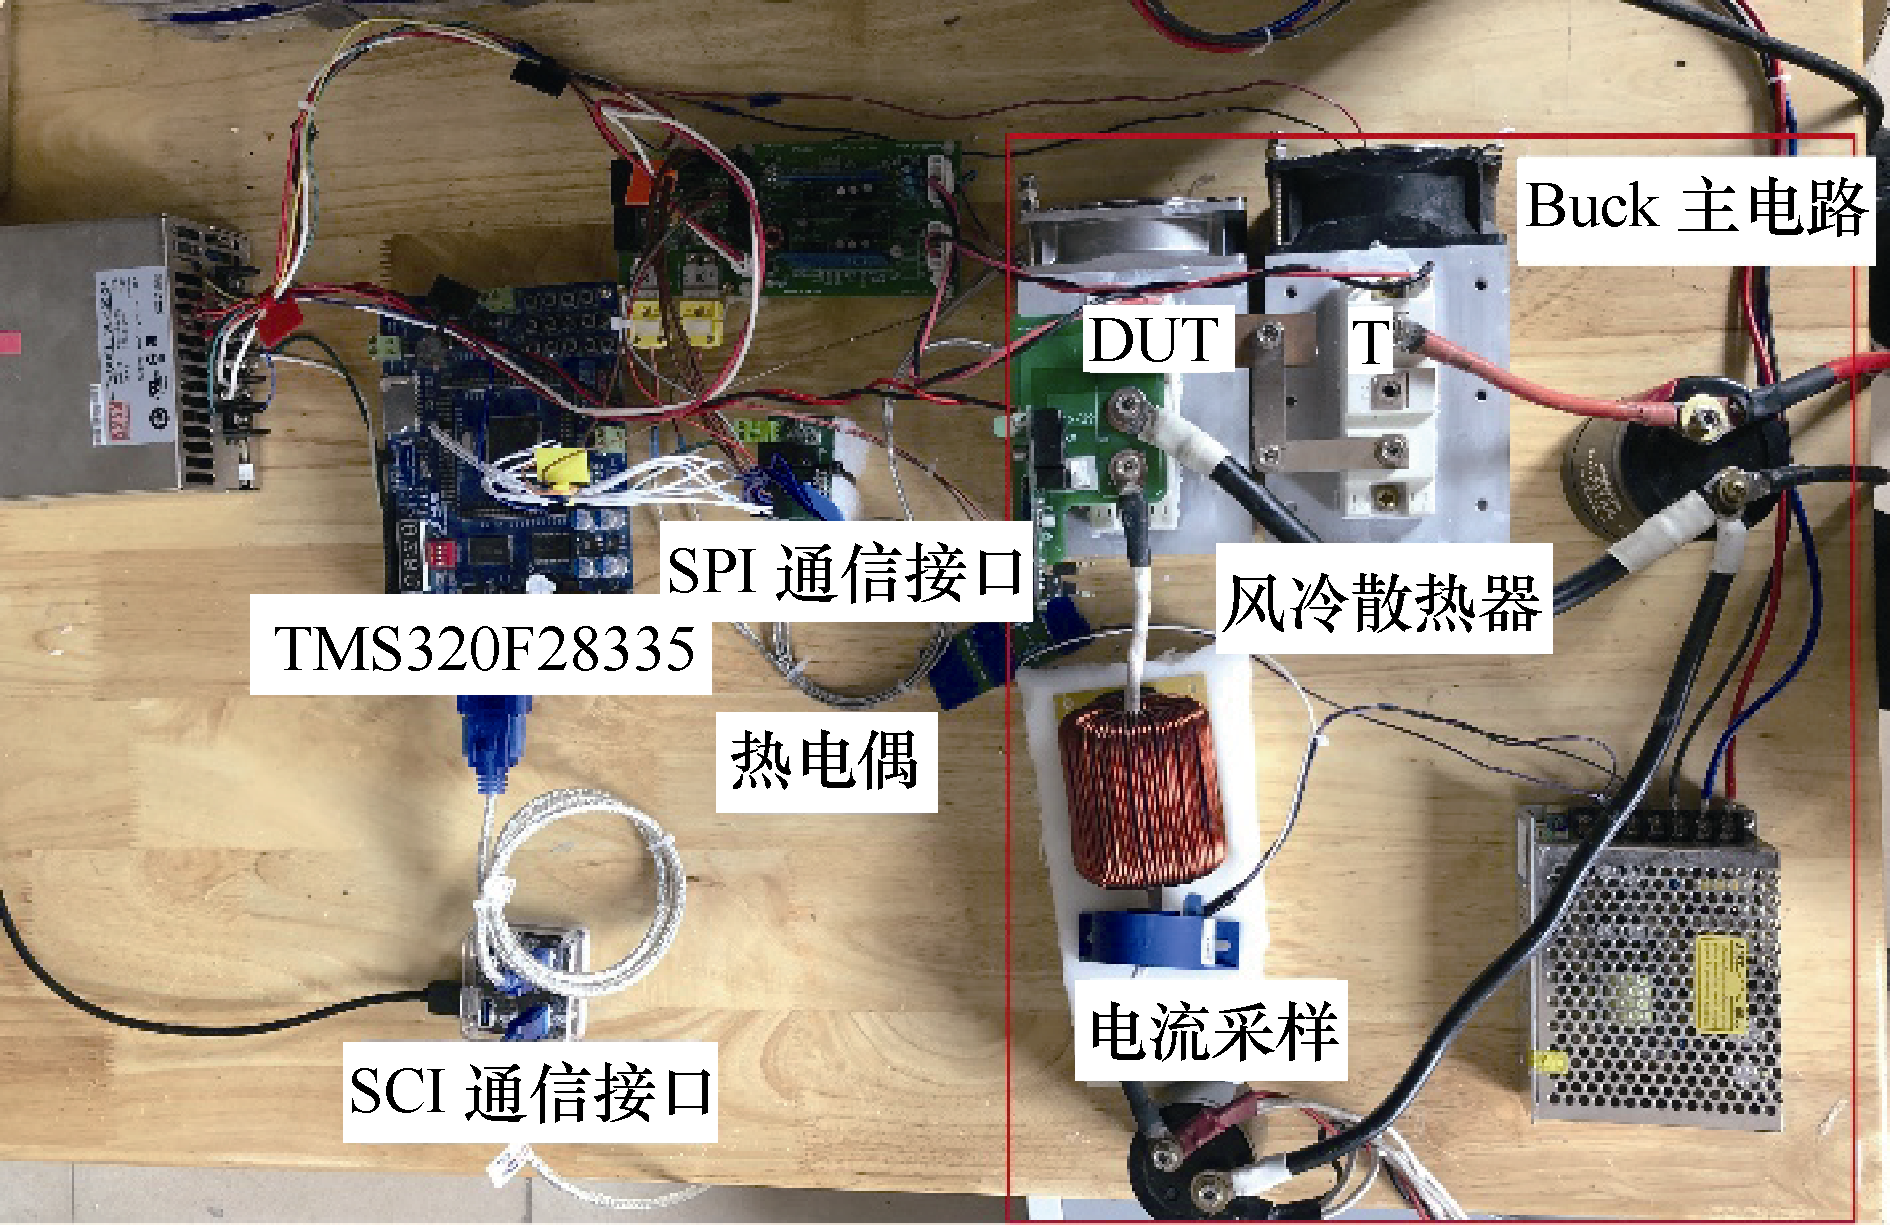 重庆大学科研人员在IGBT热管理技术研究方面取得新进展